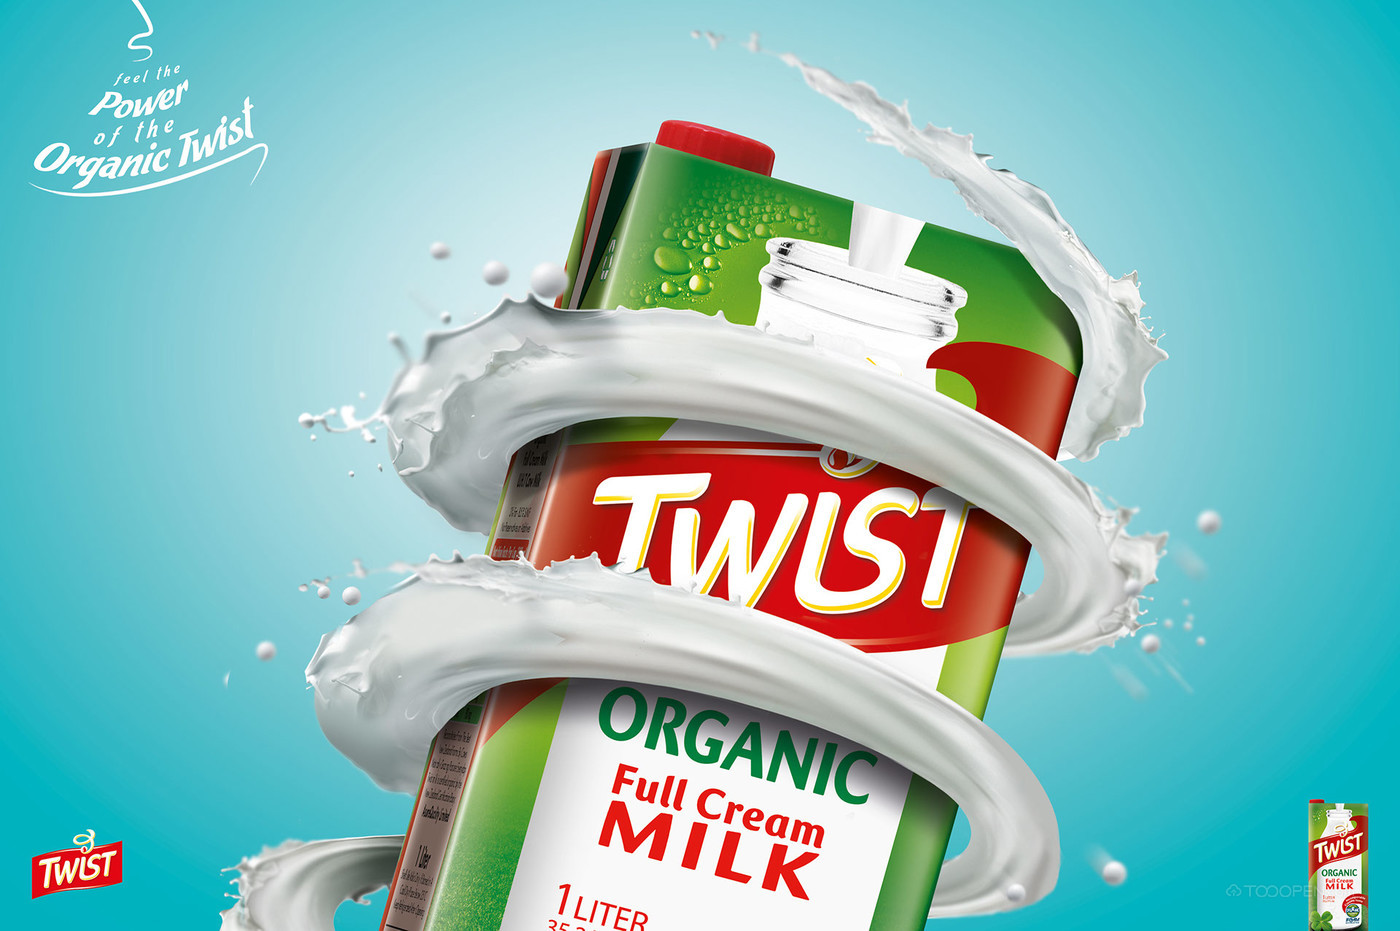 Twist牛奶海报设计作品欣赏-01